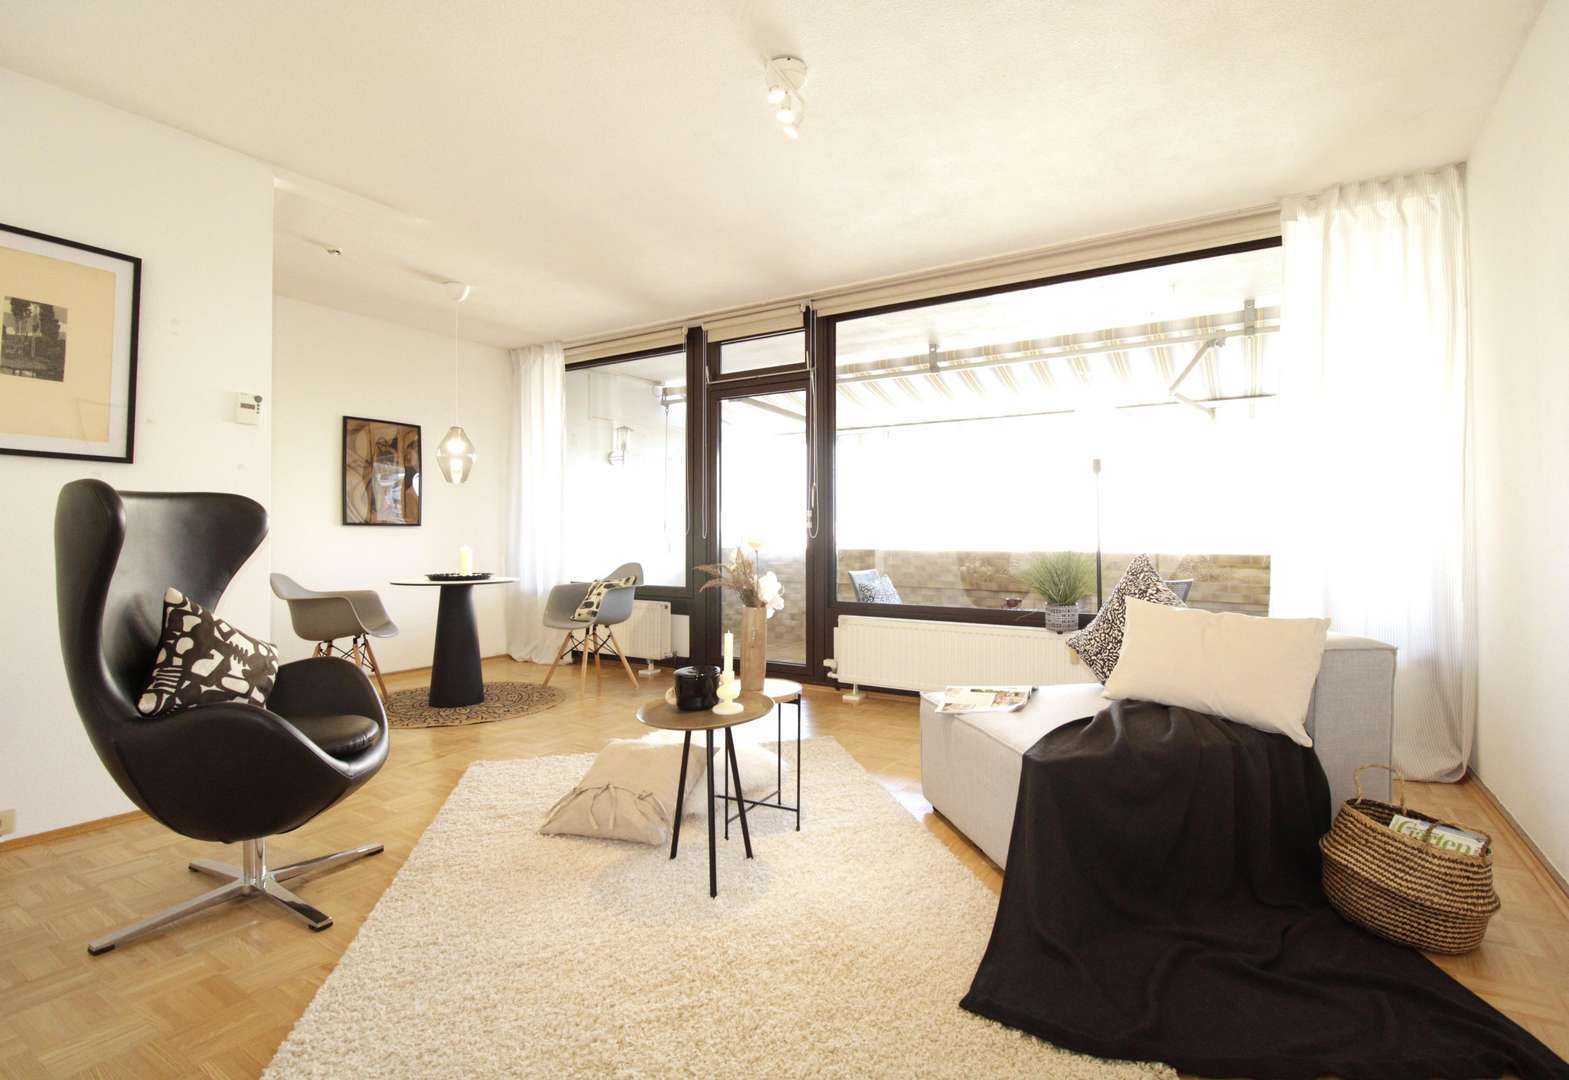 Wohnbereich - Etagenwohnung in 55126 Mainz mit 60m² kaufen